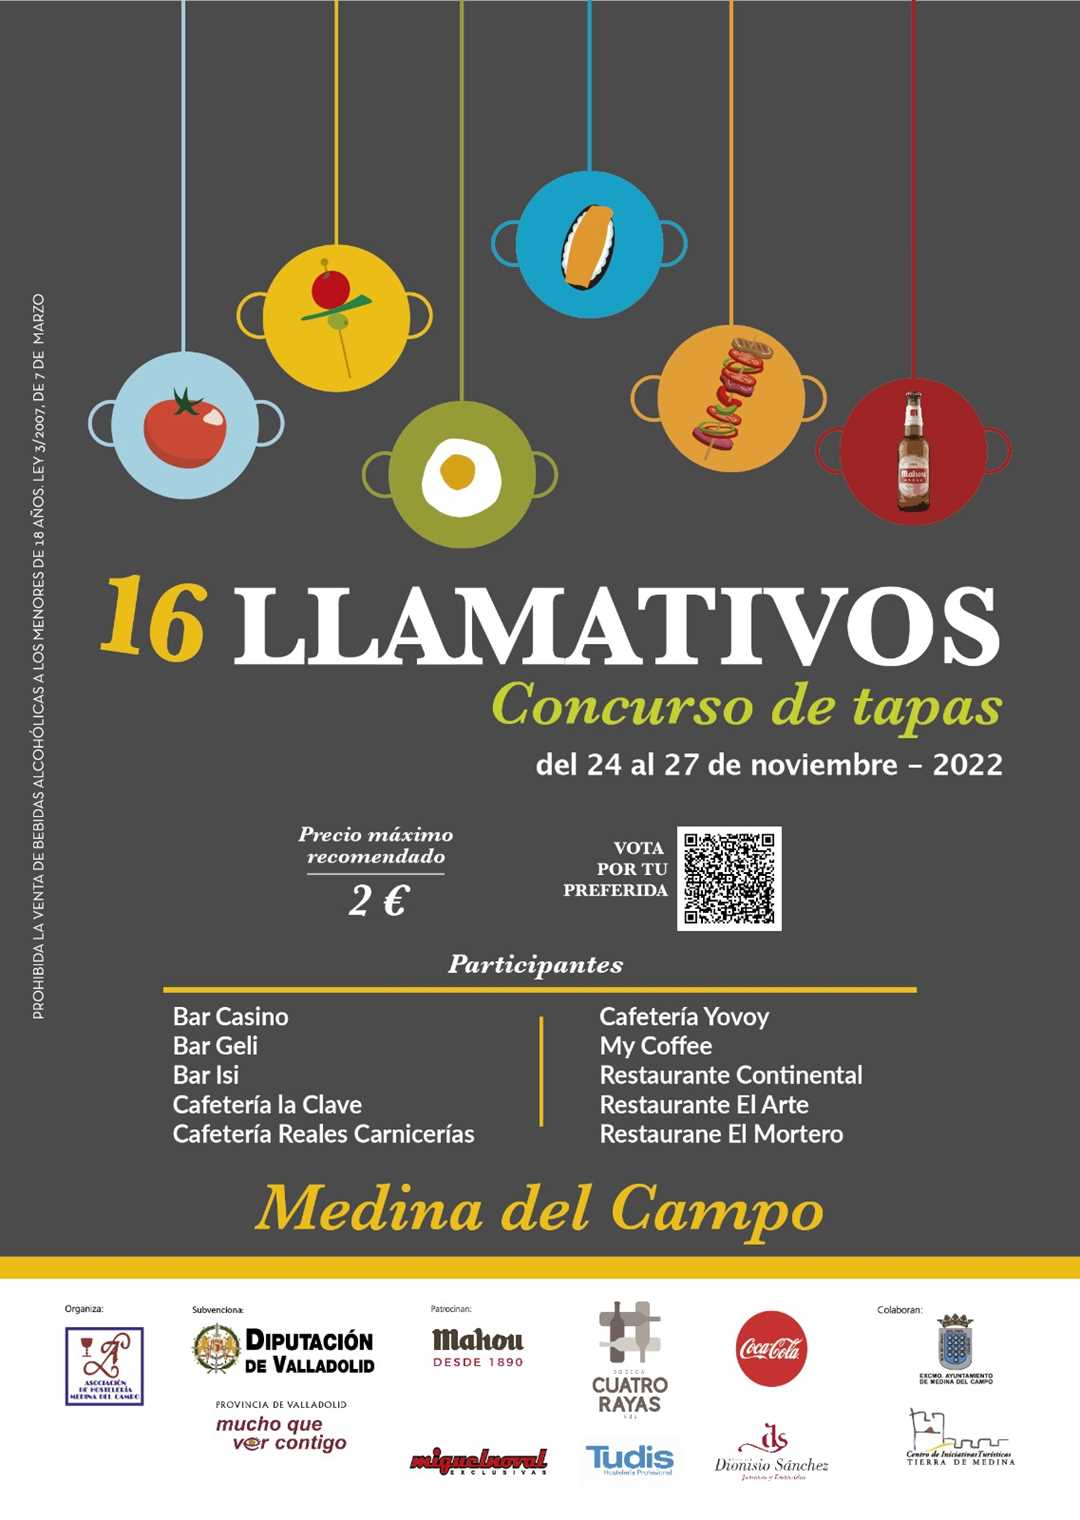 Cartel del 16 concurso "LLAMATIVOS" del 24 al 27 de noviembre de 2022 en Medina del Campo.